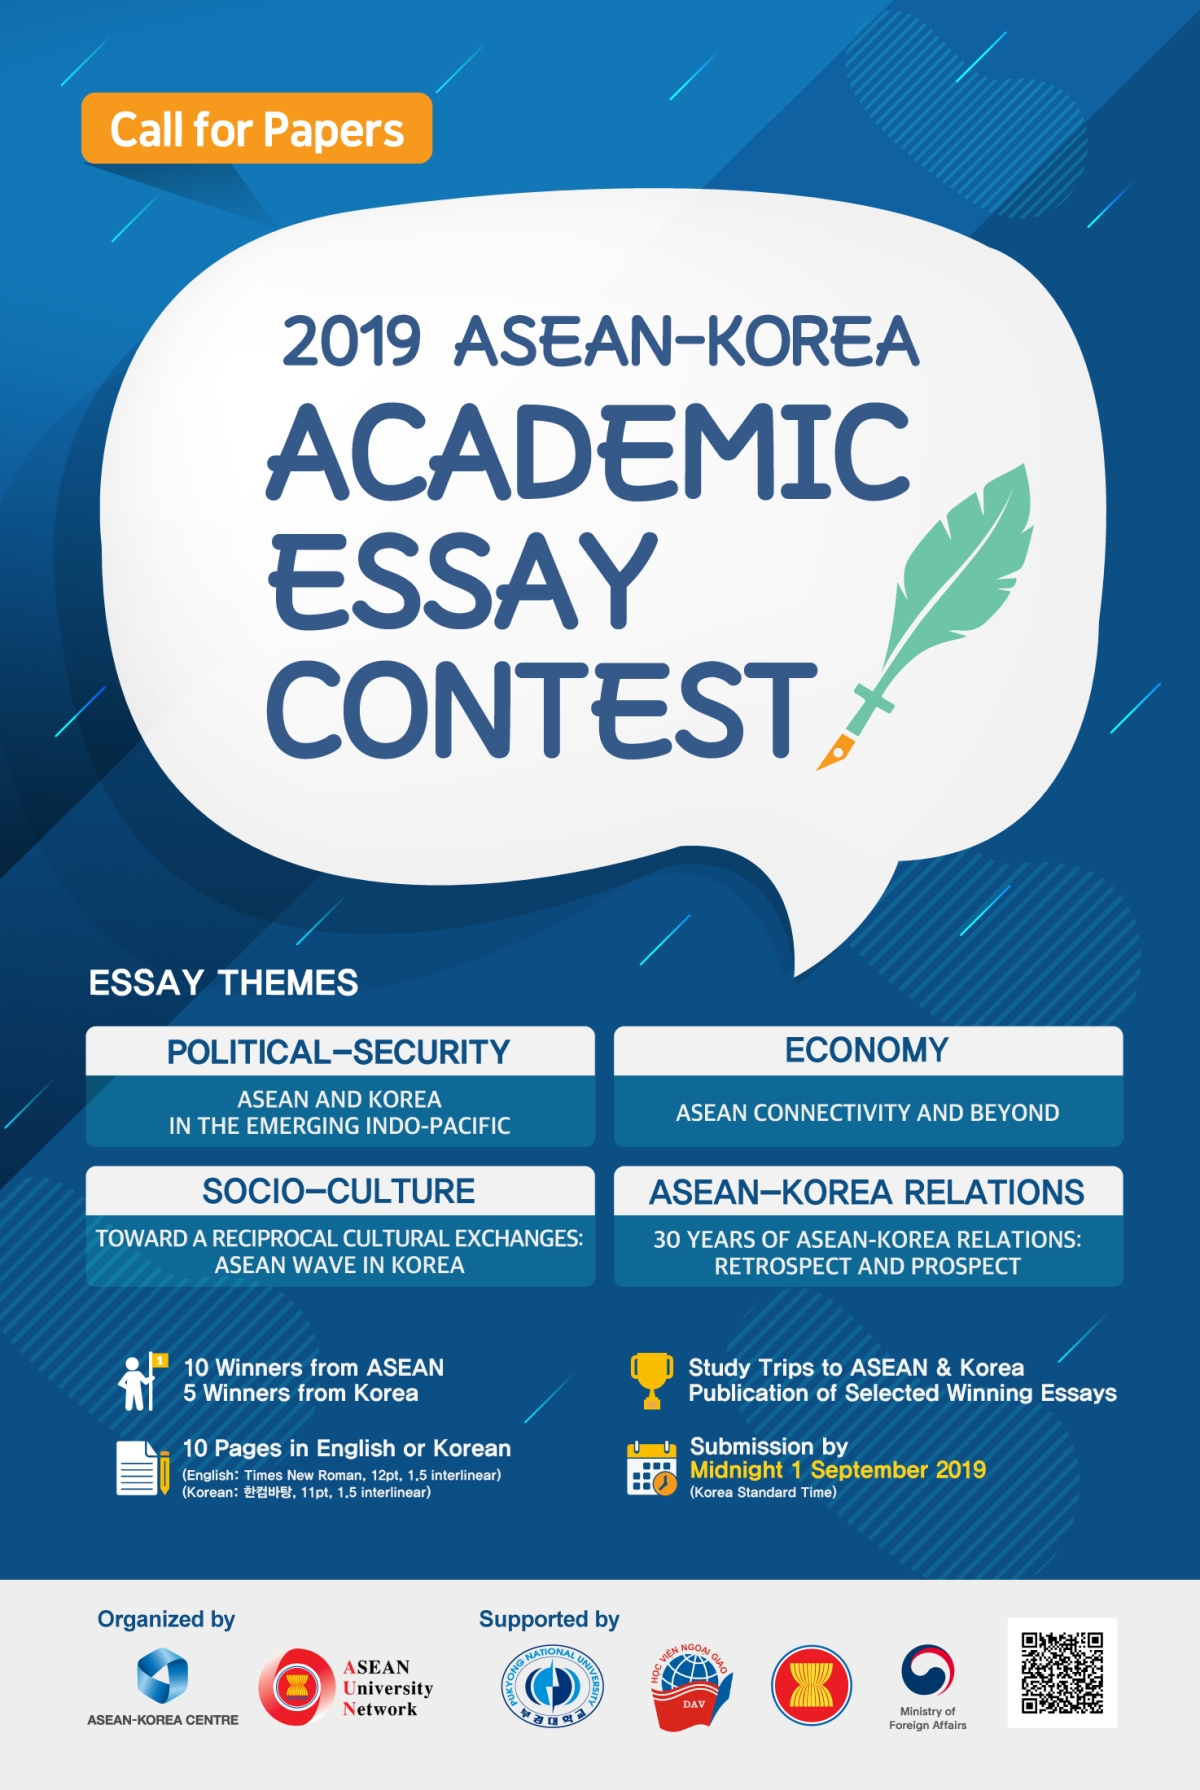 ประชาสัมพันธ์โครงการ 2019 ASEAN-Korea Academic Essay Contest